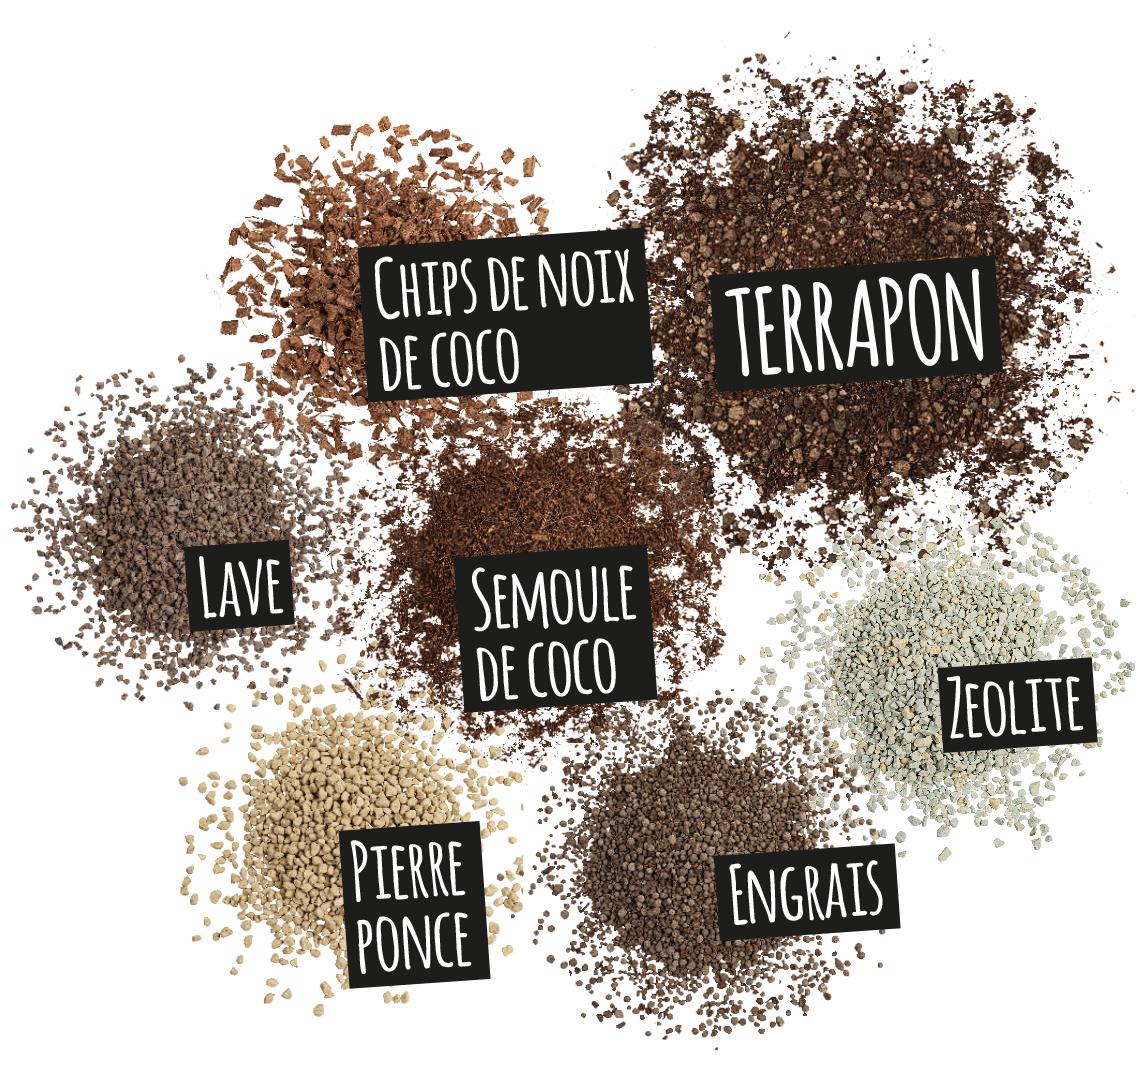 'Composantes de TERRAPON: Chips de noix de coco